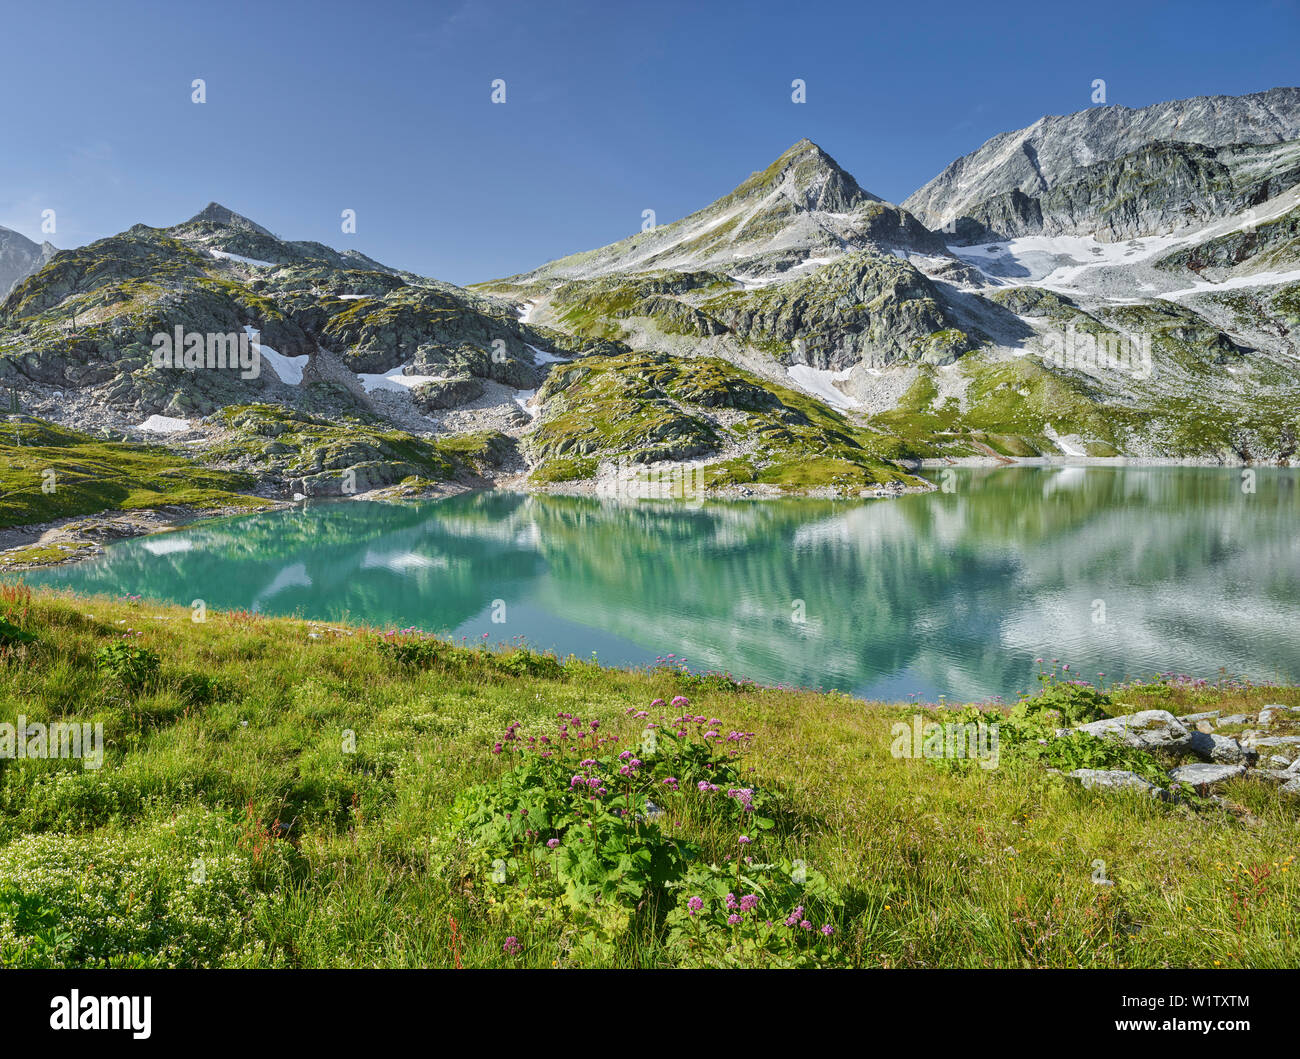 Hohe Tauern, Salzburg, Austria weißsee, Kogel, Eiskogele, Hohe Tauern National Park Stock Photo